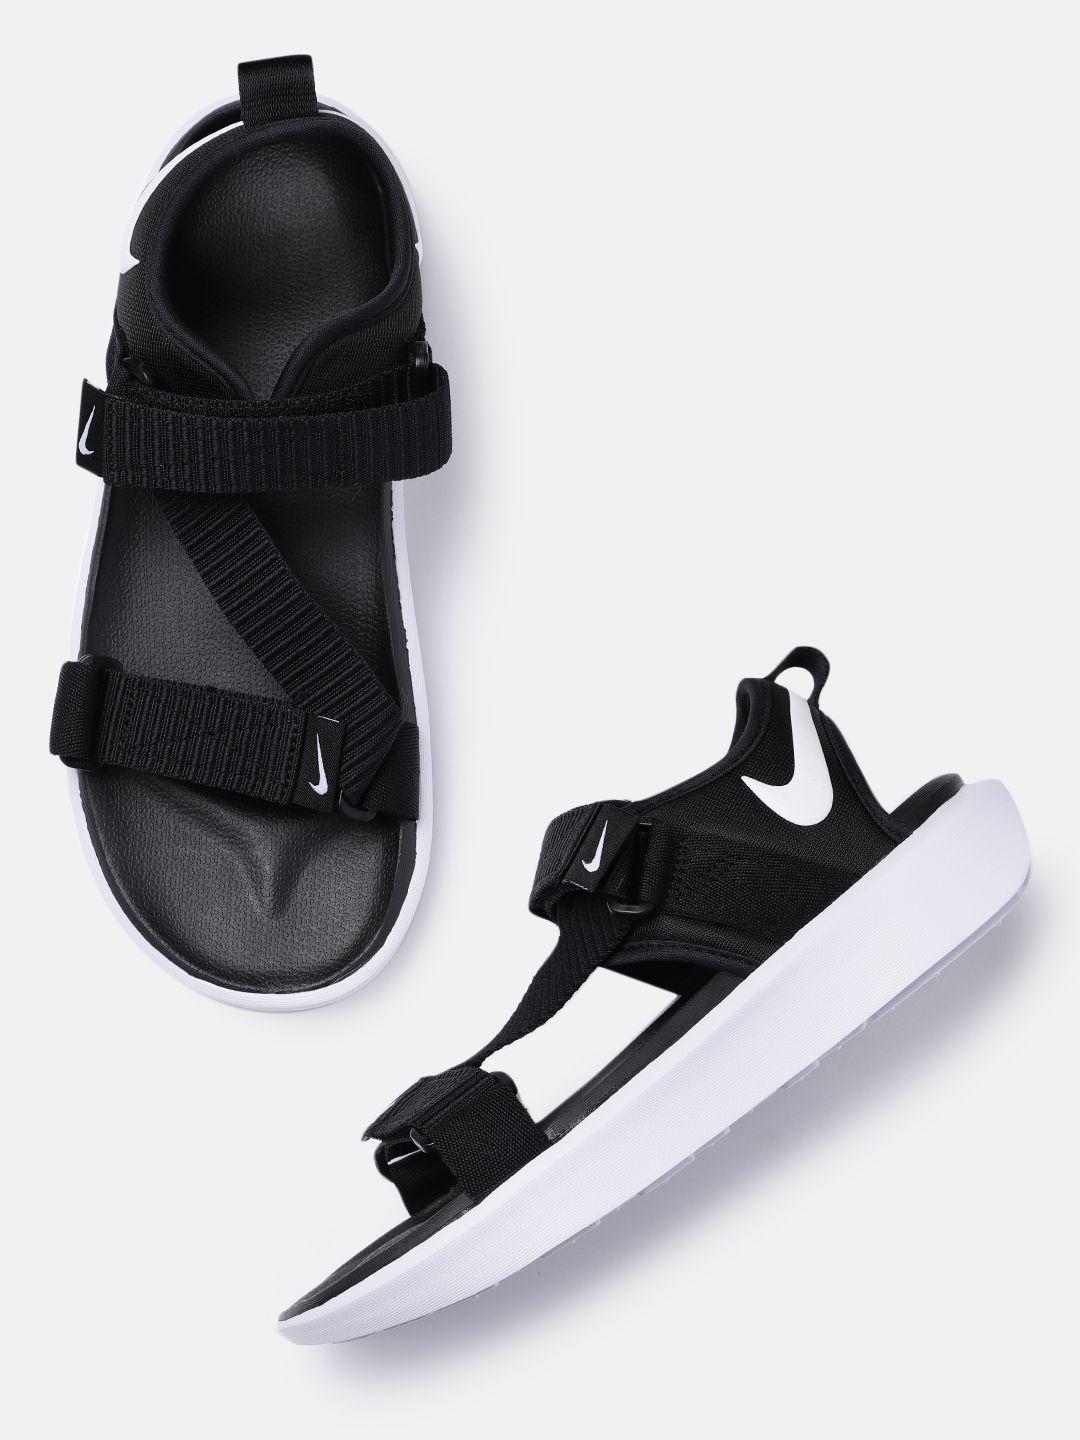 nike-men-black-and-white-vista-sports-sandals